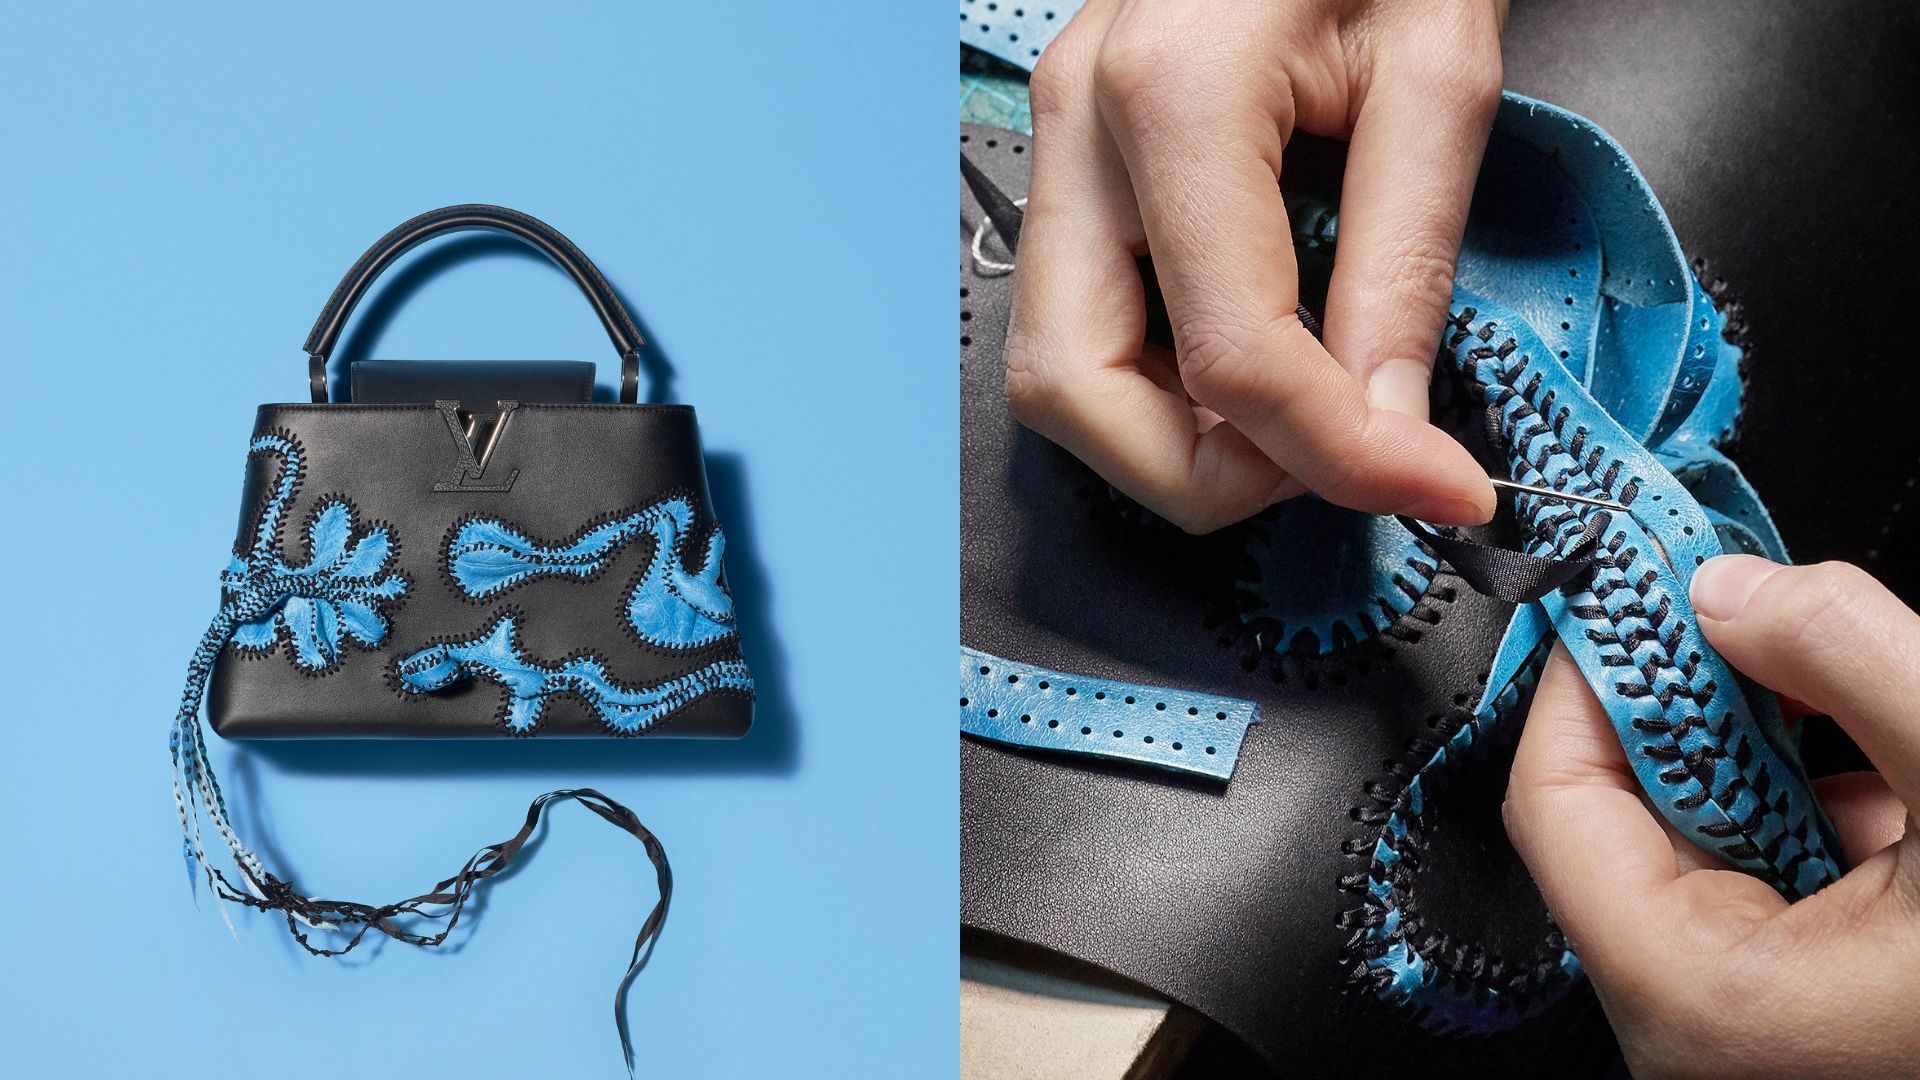 Reimagining Louis Vuitton's Iconic Capucine Bag With Nicholas Hlobo